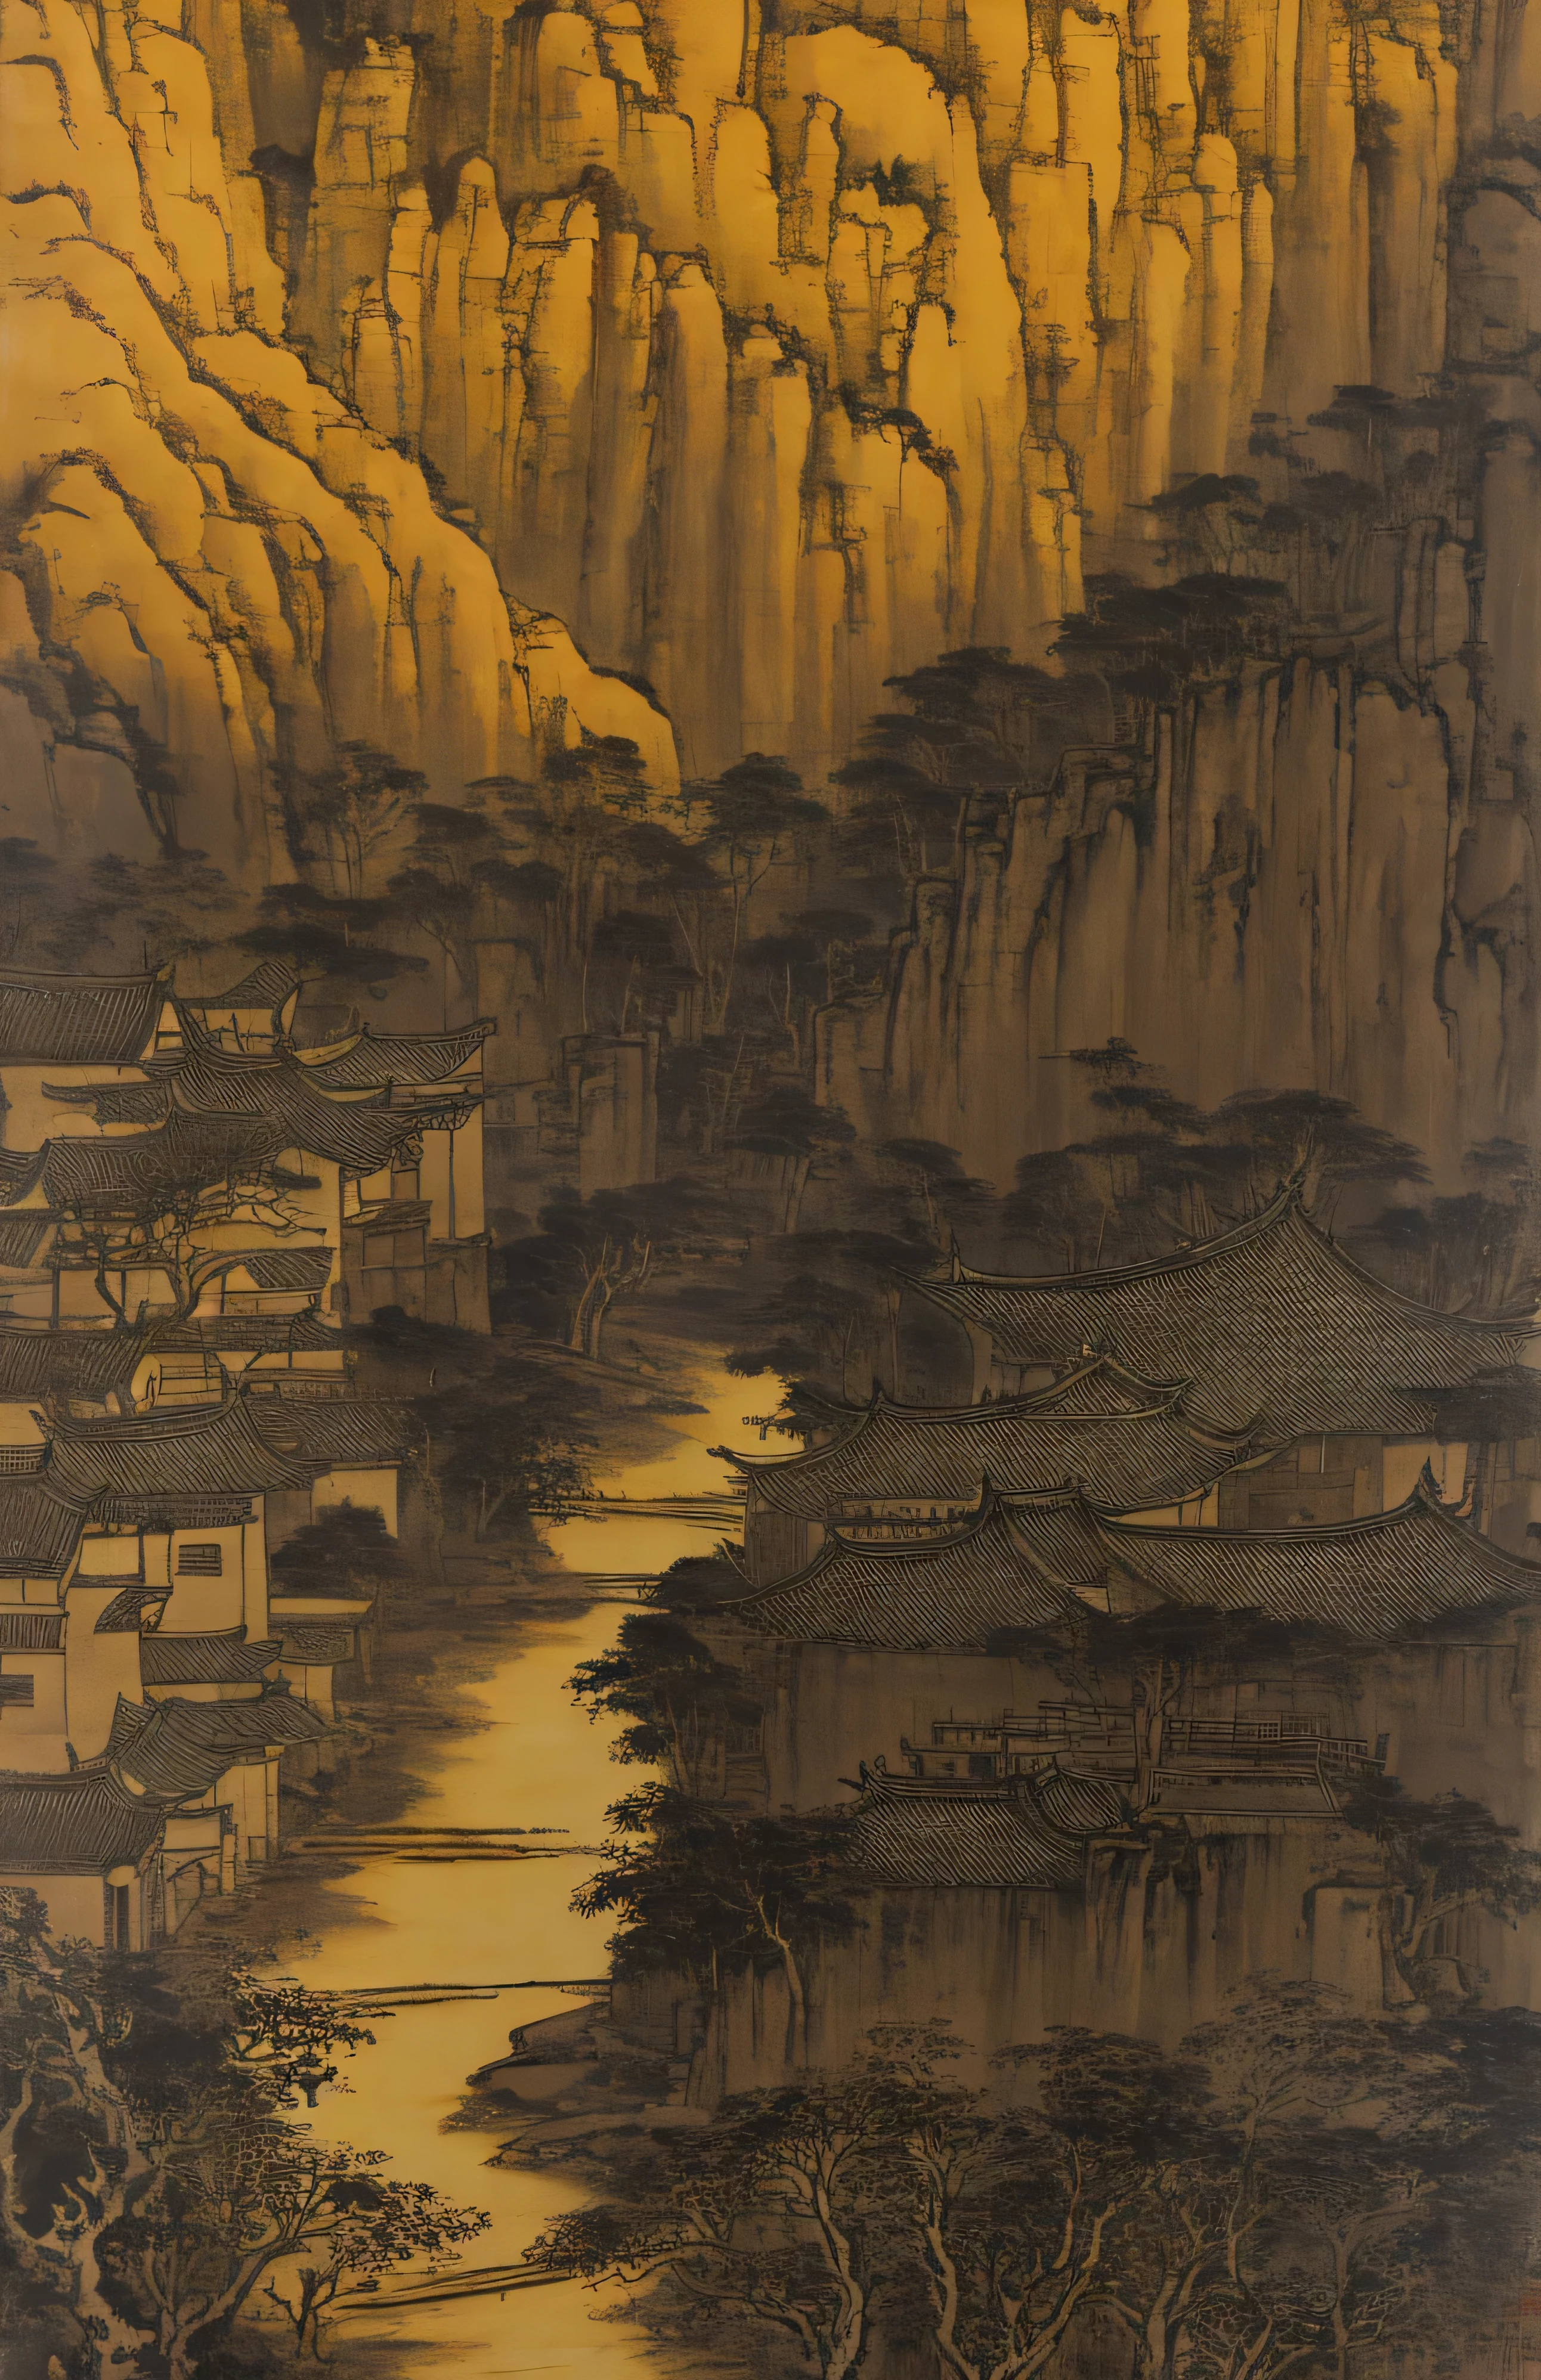 Маленькая деревня с видом на ручей, Стиль создан под влиянием древнего китайского искусства., светло-желтый и светло-черный, китайская живопись, живопись тушью, Есть в Шанрене, Сюй Вэй, Ши Тао, органическая архитектура, пеший туризм, землистый натурализм